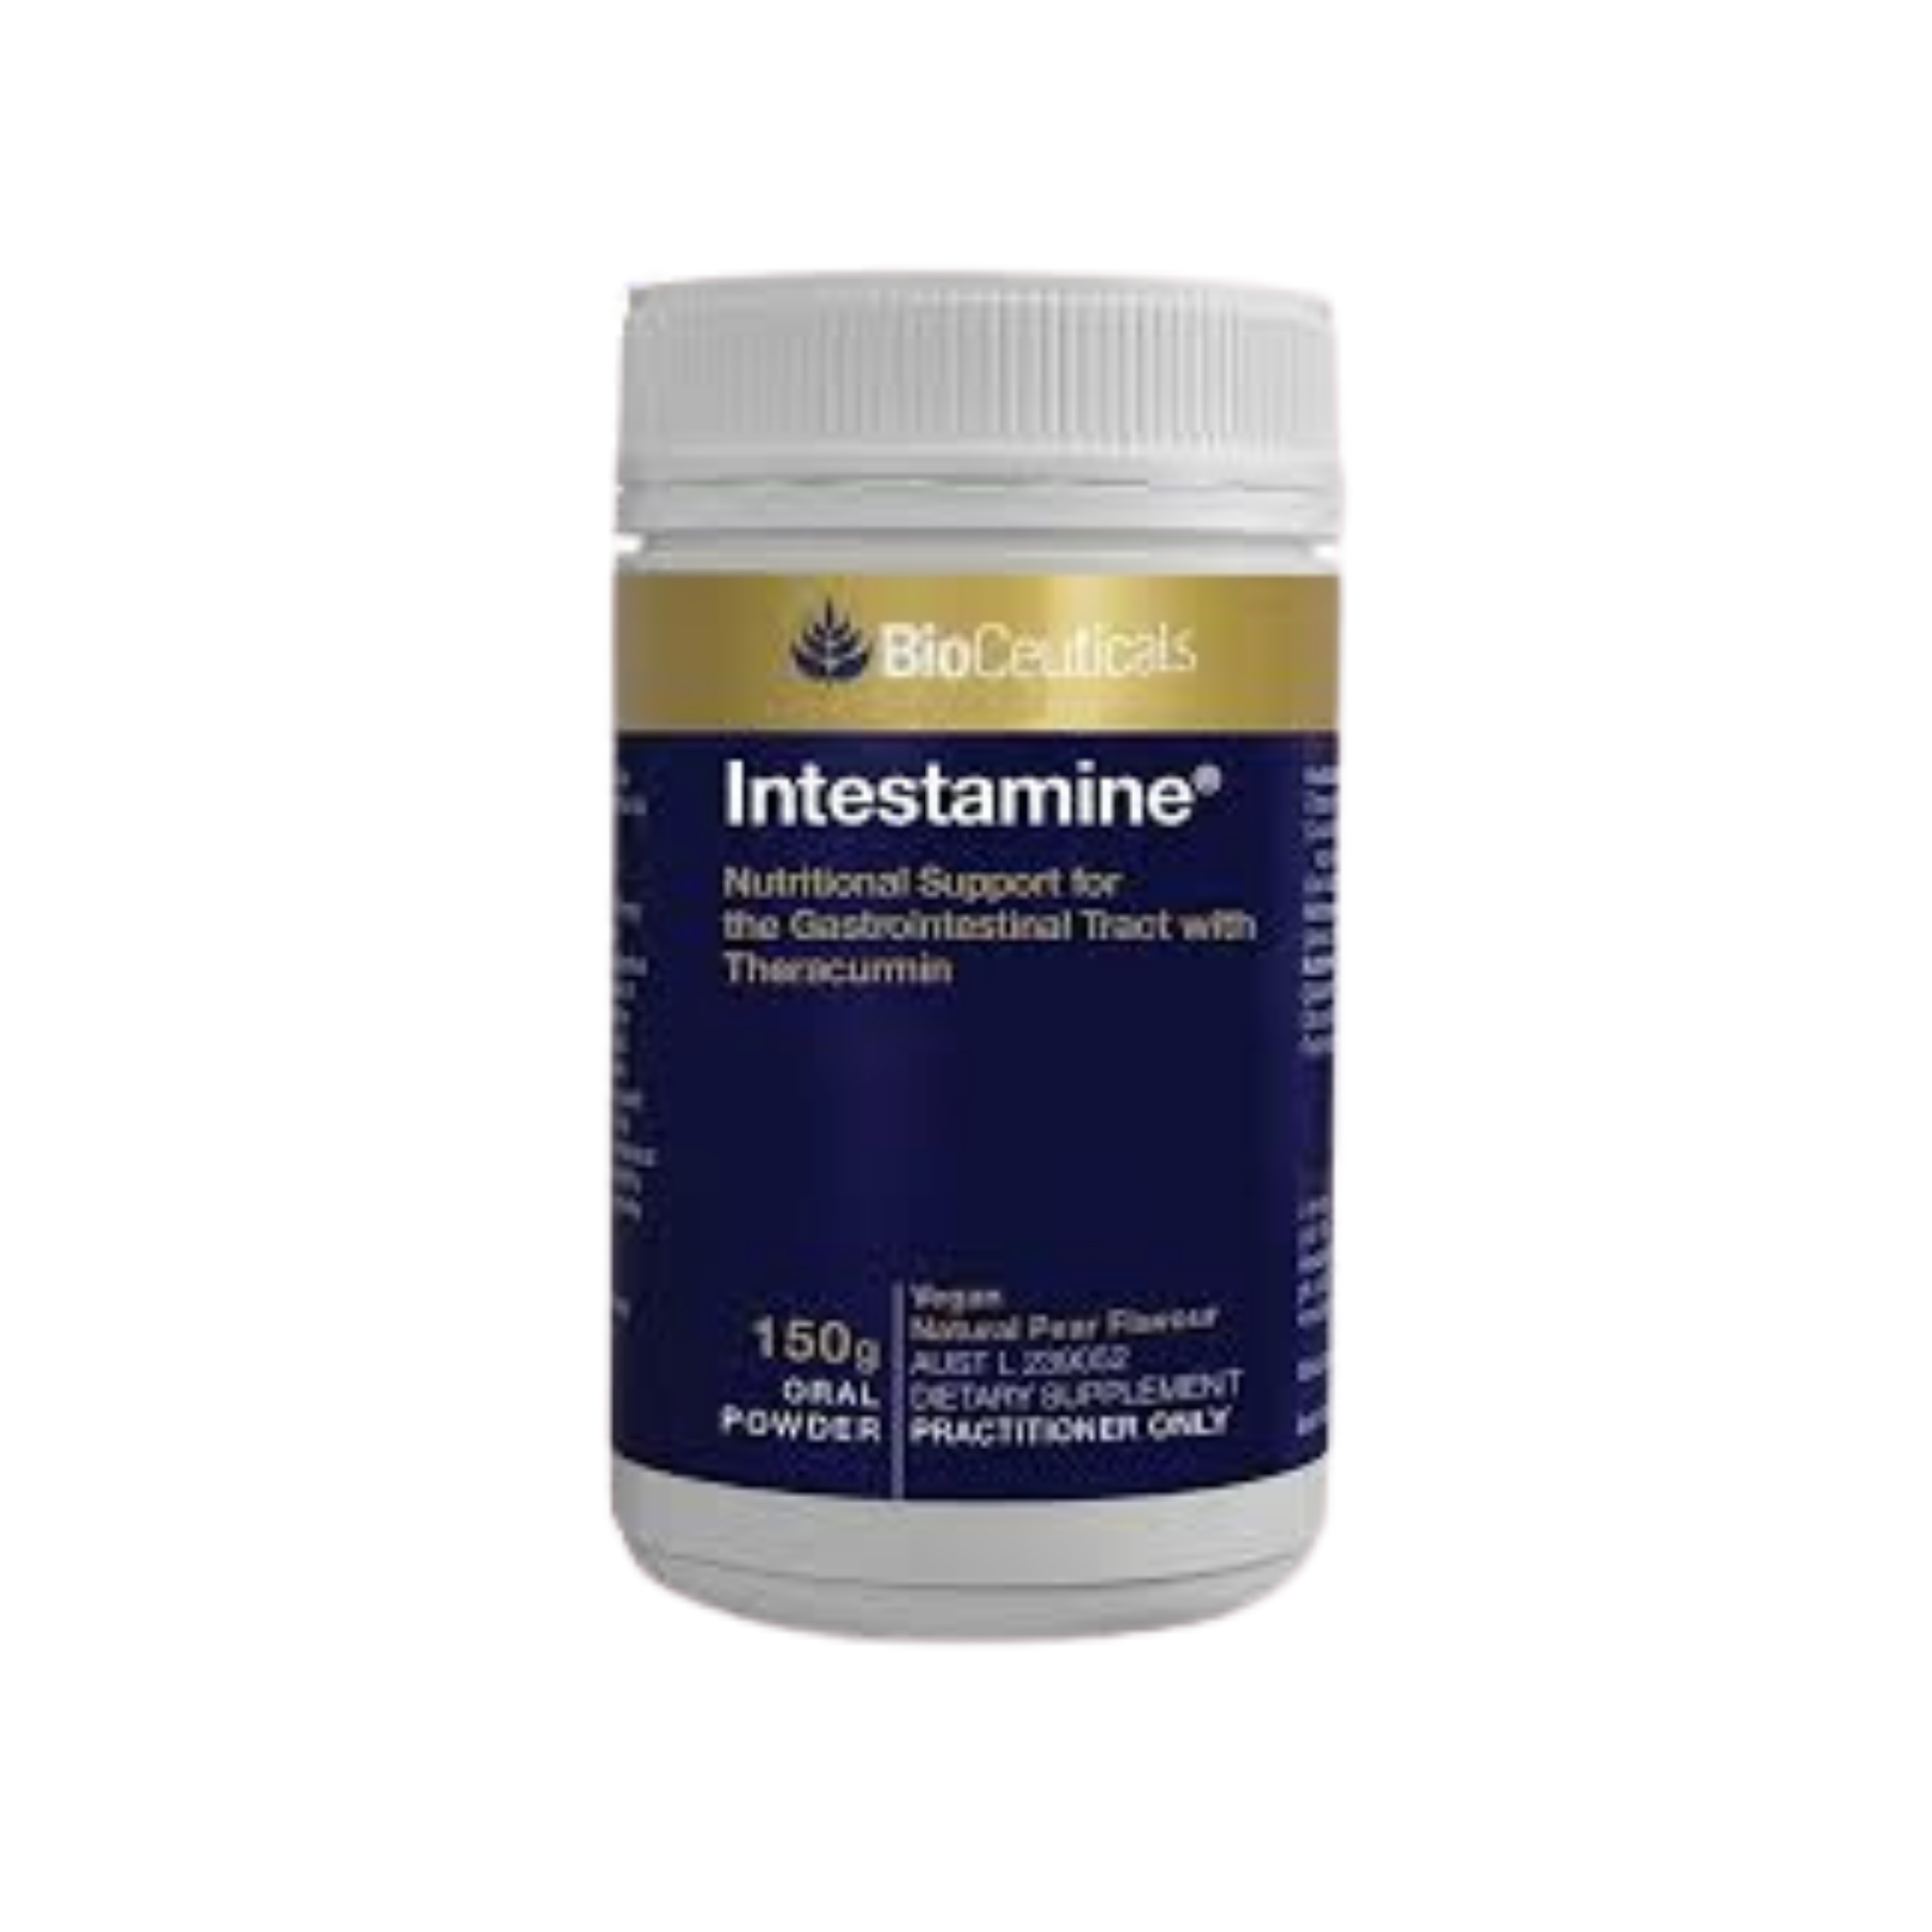 BioCeuticals Intestamine 150g